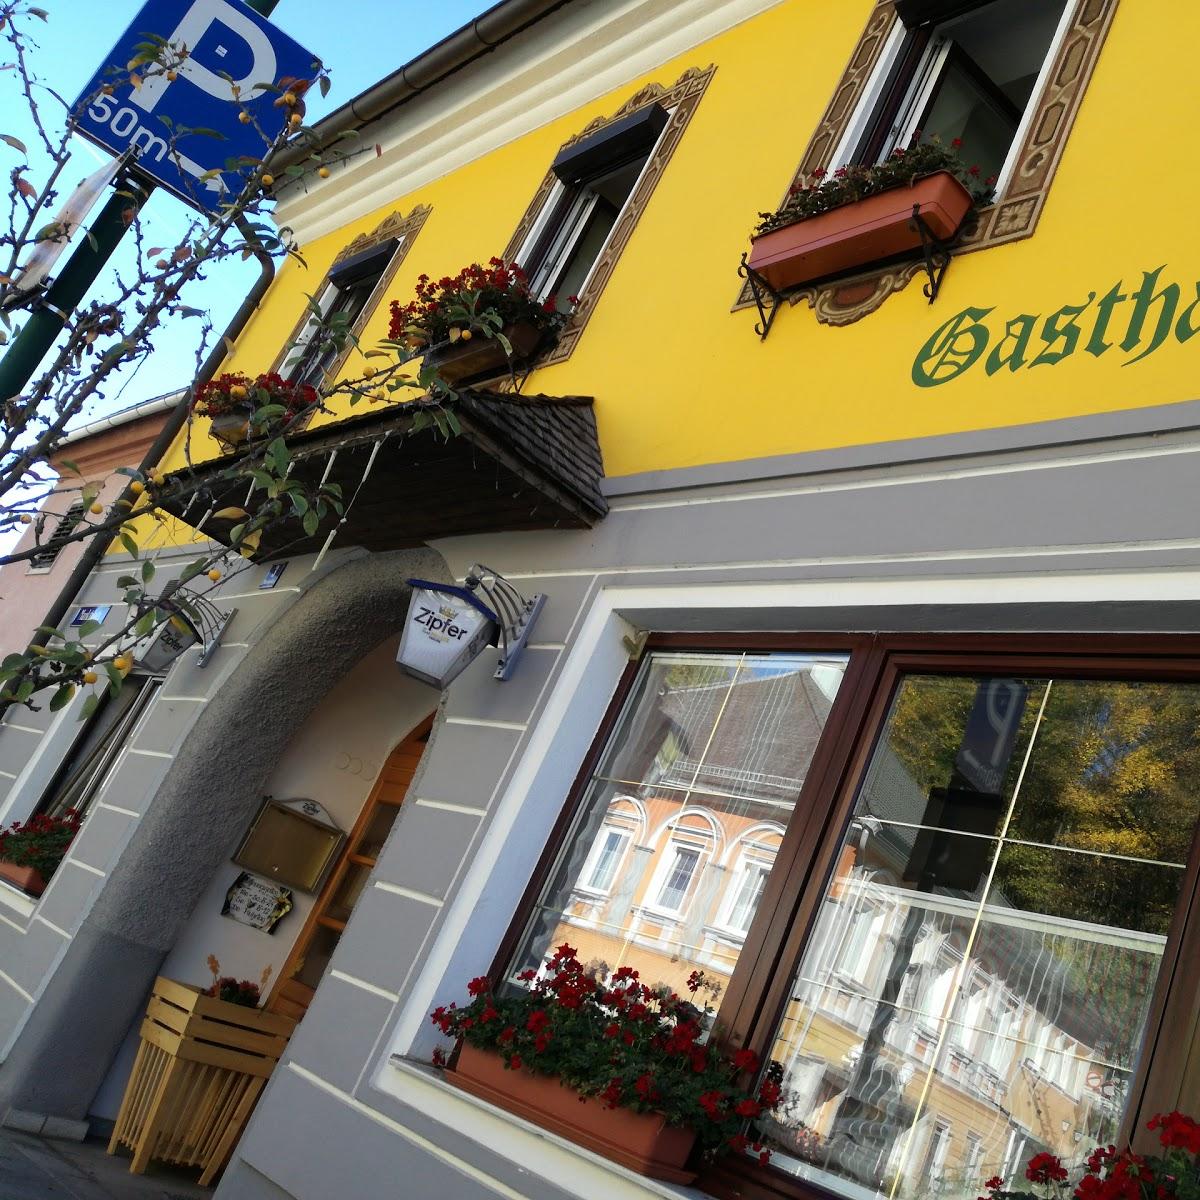 Restaurant "Schlosstaverne Obrist" in Wolfsegg am Hausruck